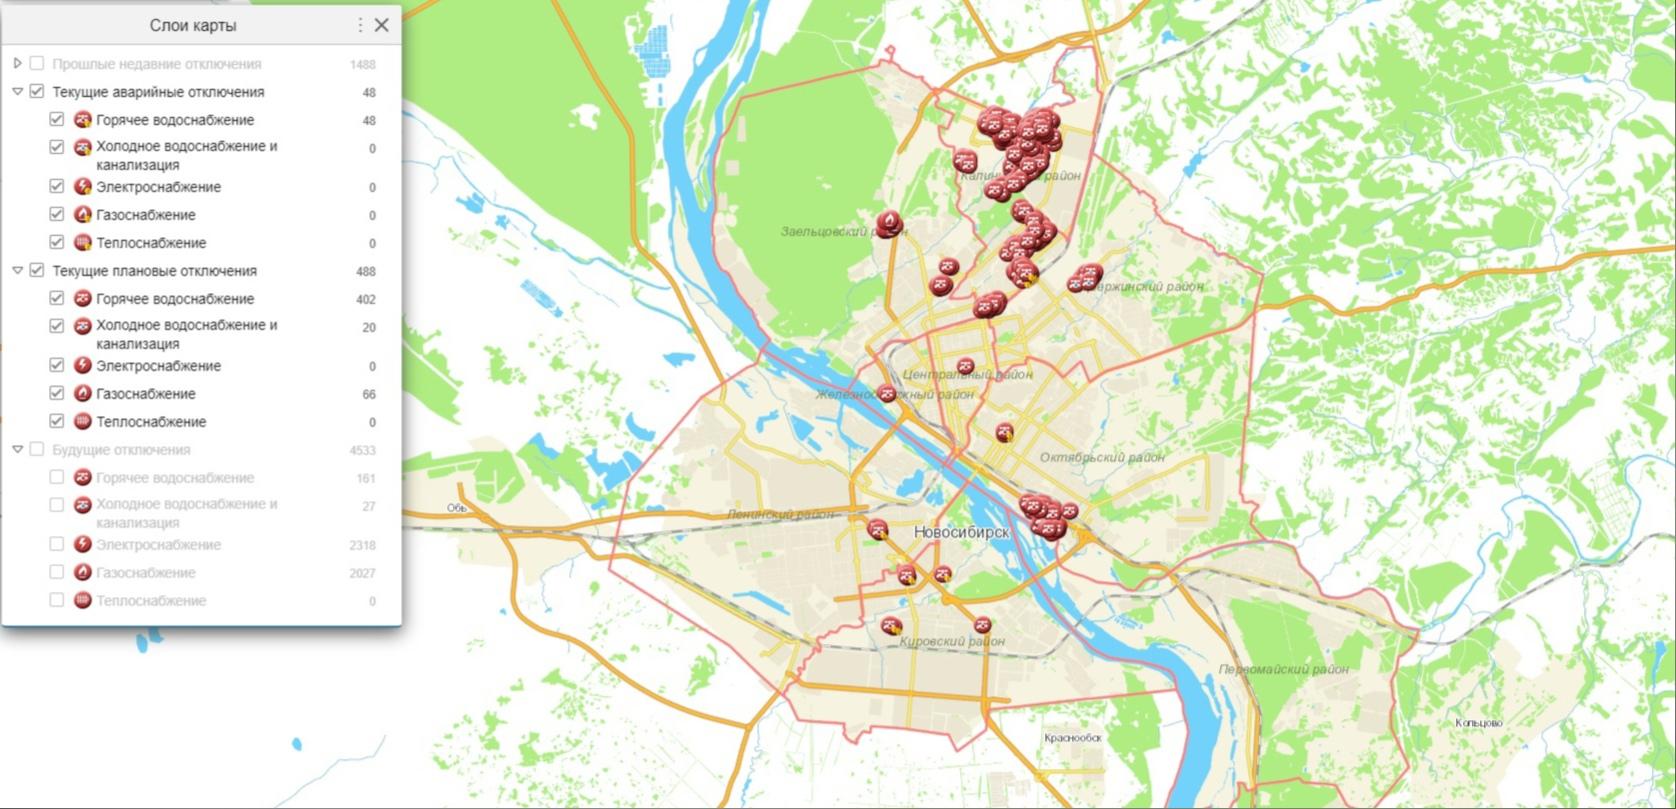 Хабаровск отключения горячей воды тэц 3. Зона ТЭЦ 2 Новосибирск. Карта отключений горячей воды Новосибирск. Холодная камера карта. Карта Заельцовского района.